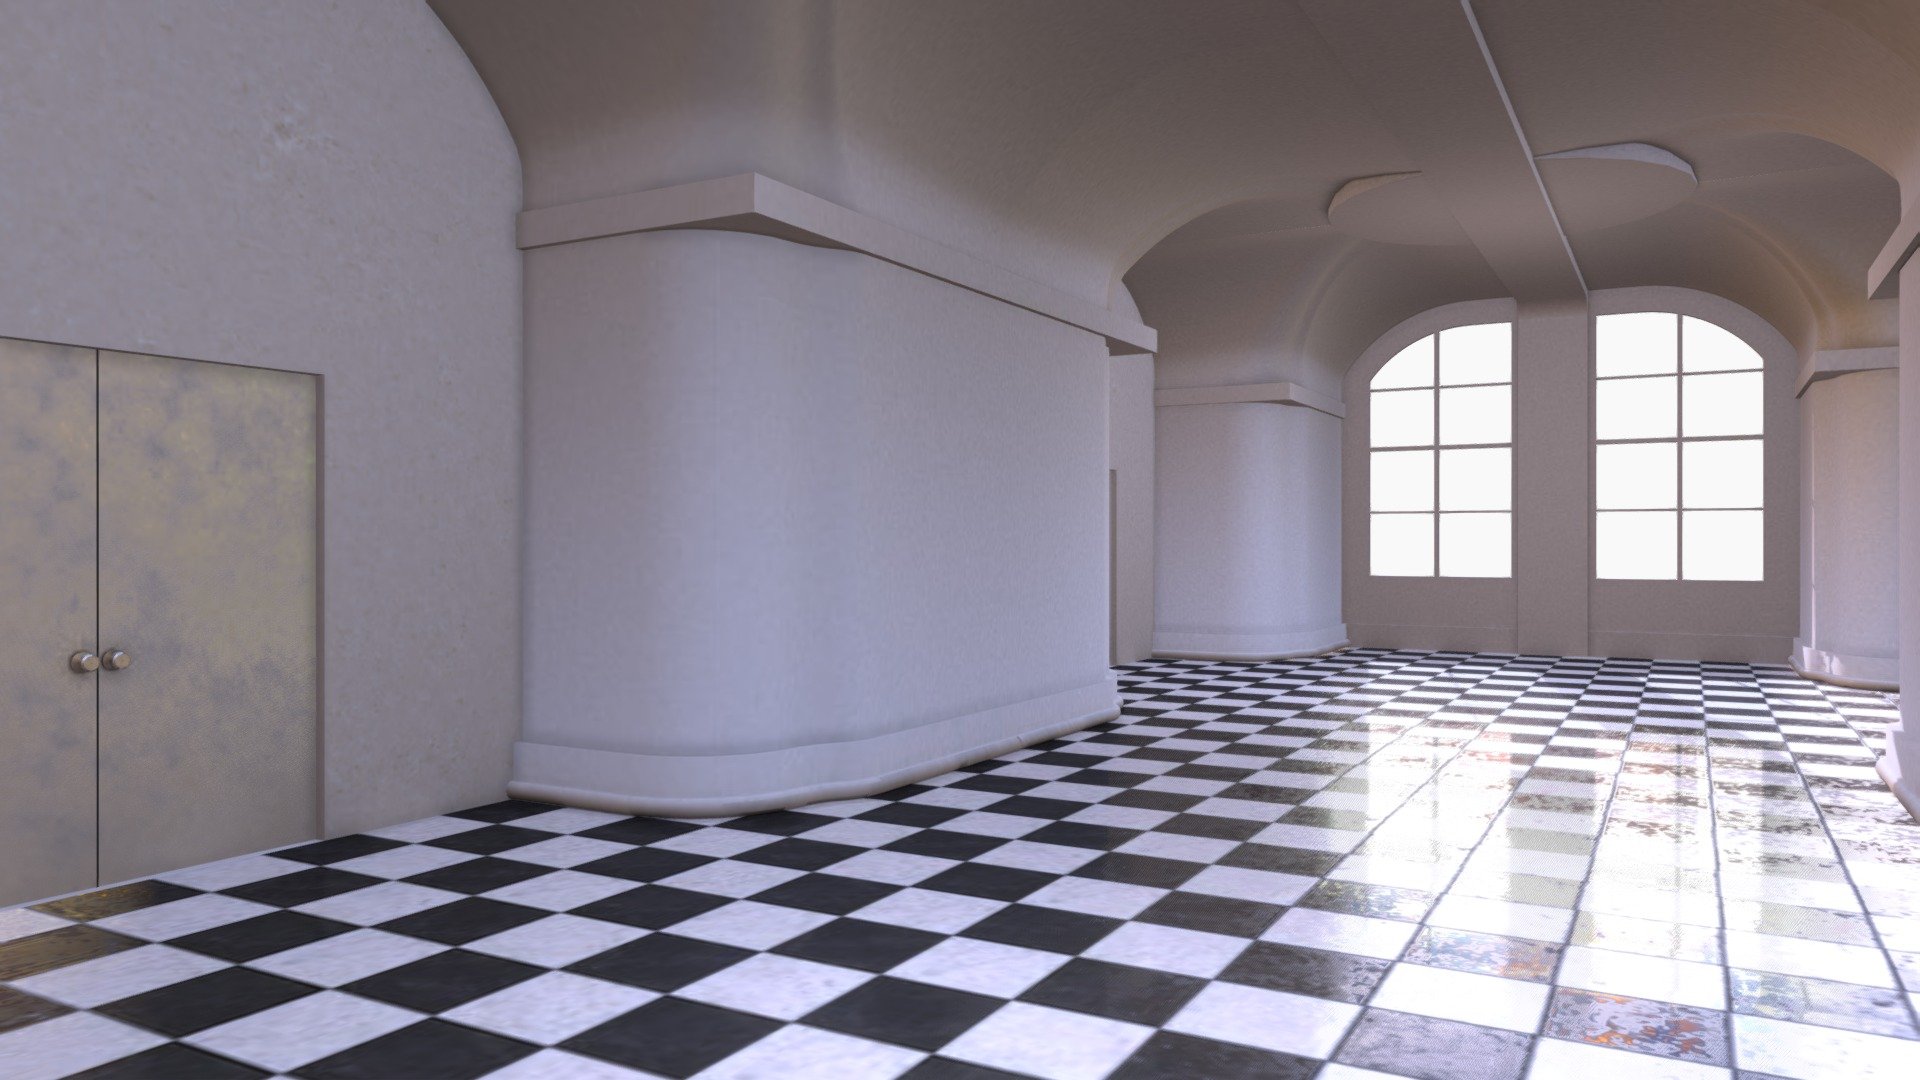 Checkered Floor Hallway
Textures baked in Blender - Checkered Floor Hallway - Buy Royalty Free 3D model by jimbogies 3d model